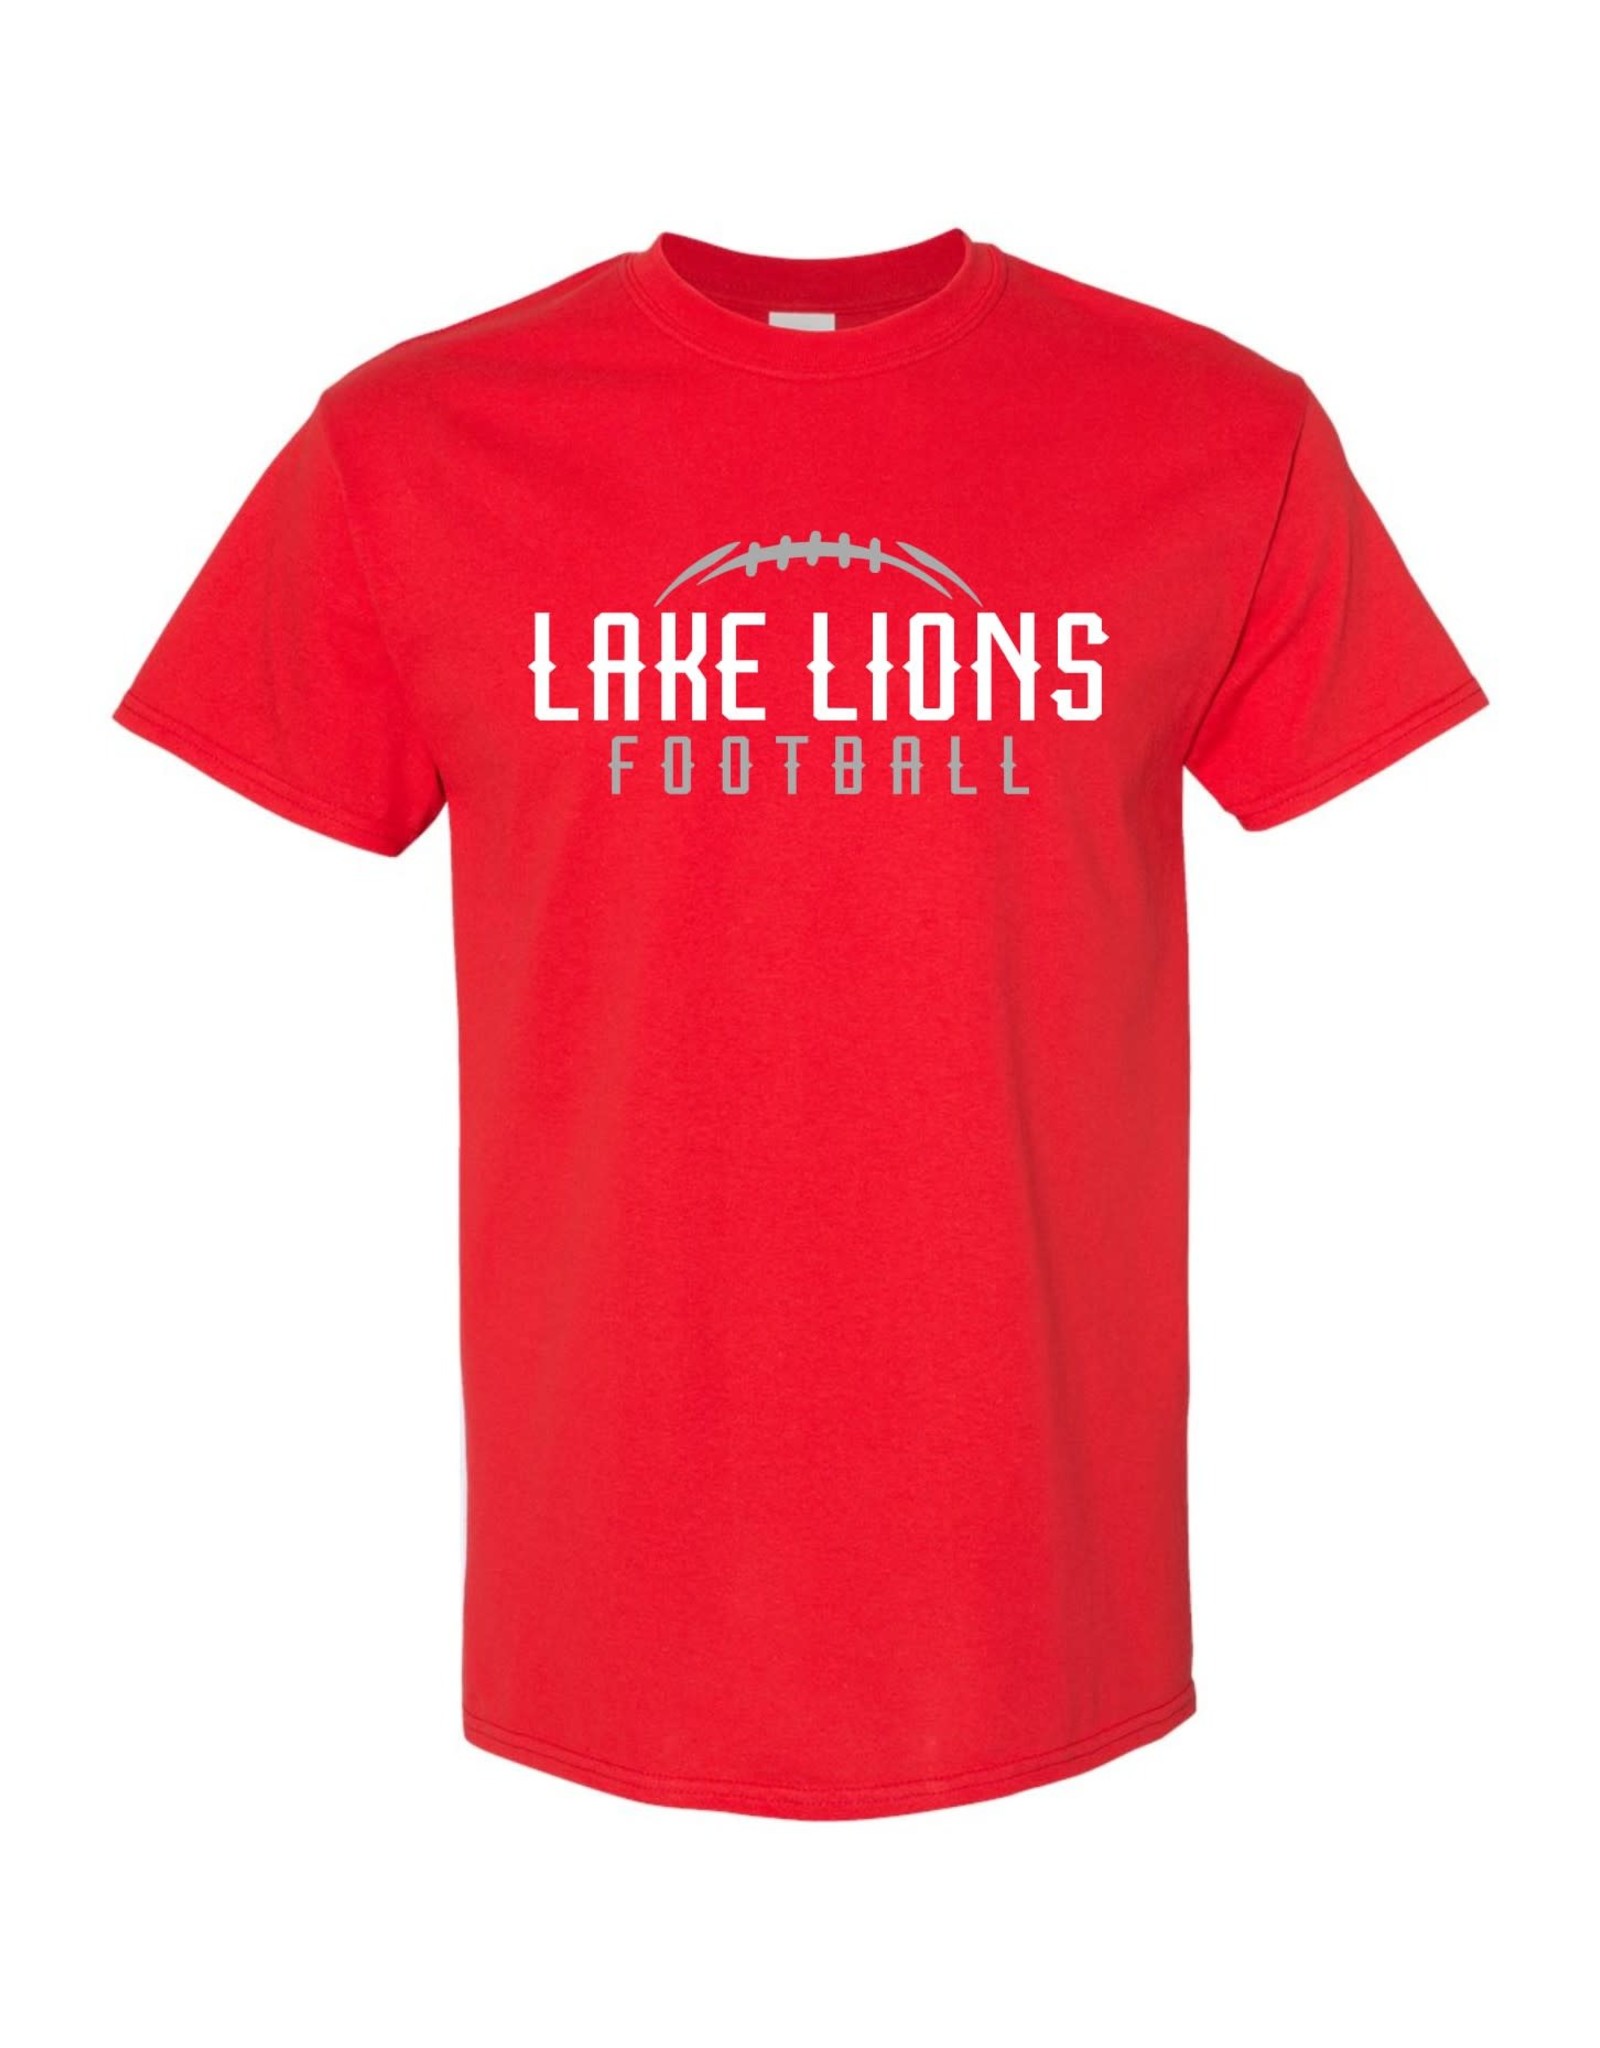 Lake Lions Football